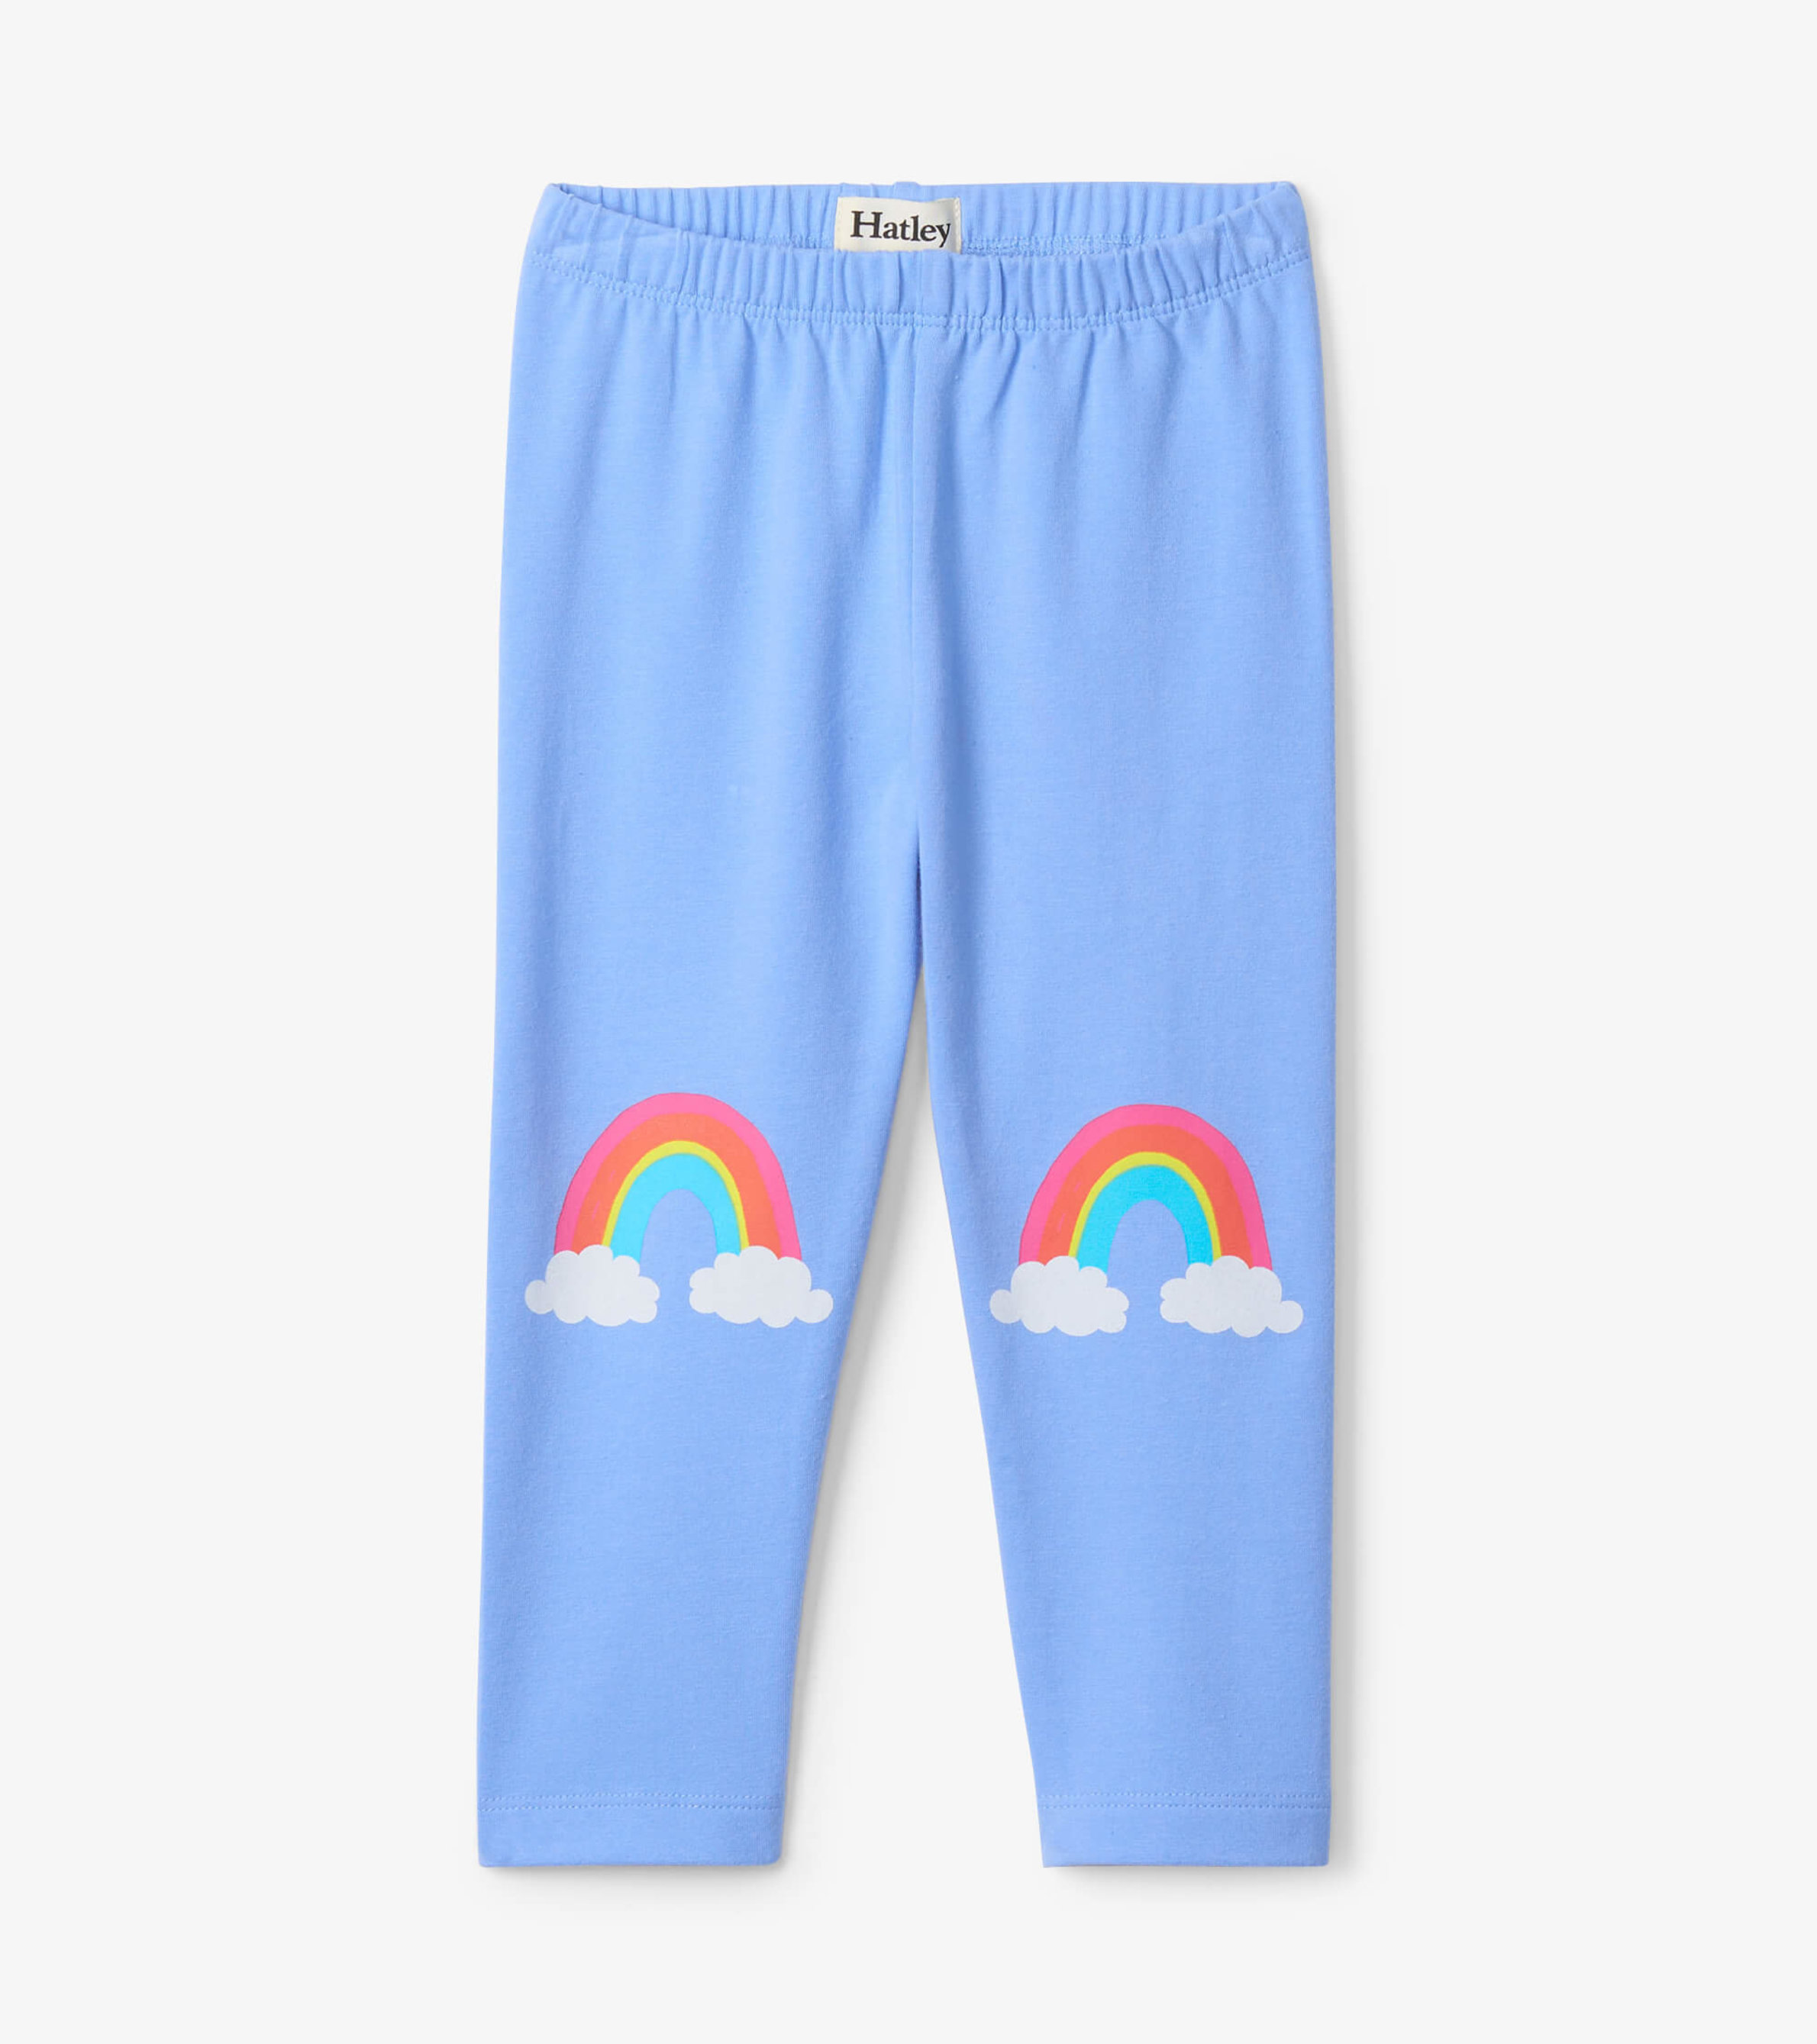 Otter Children's Cotton Jersey Leggings – Rainbows & Sprinkles